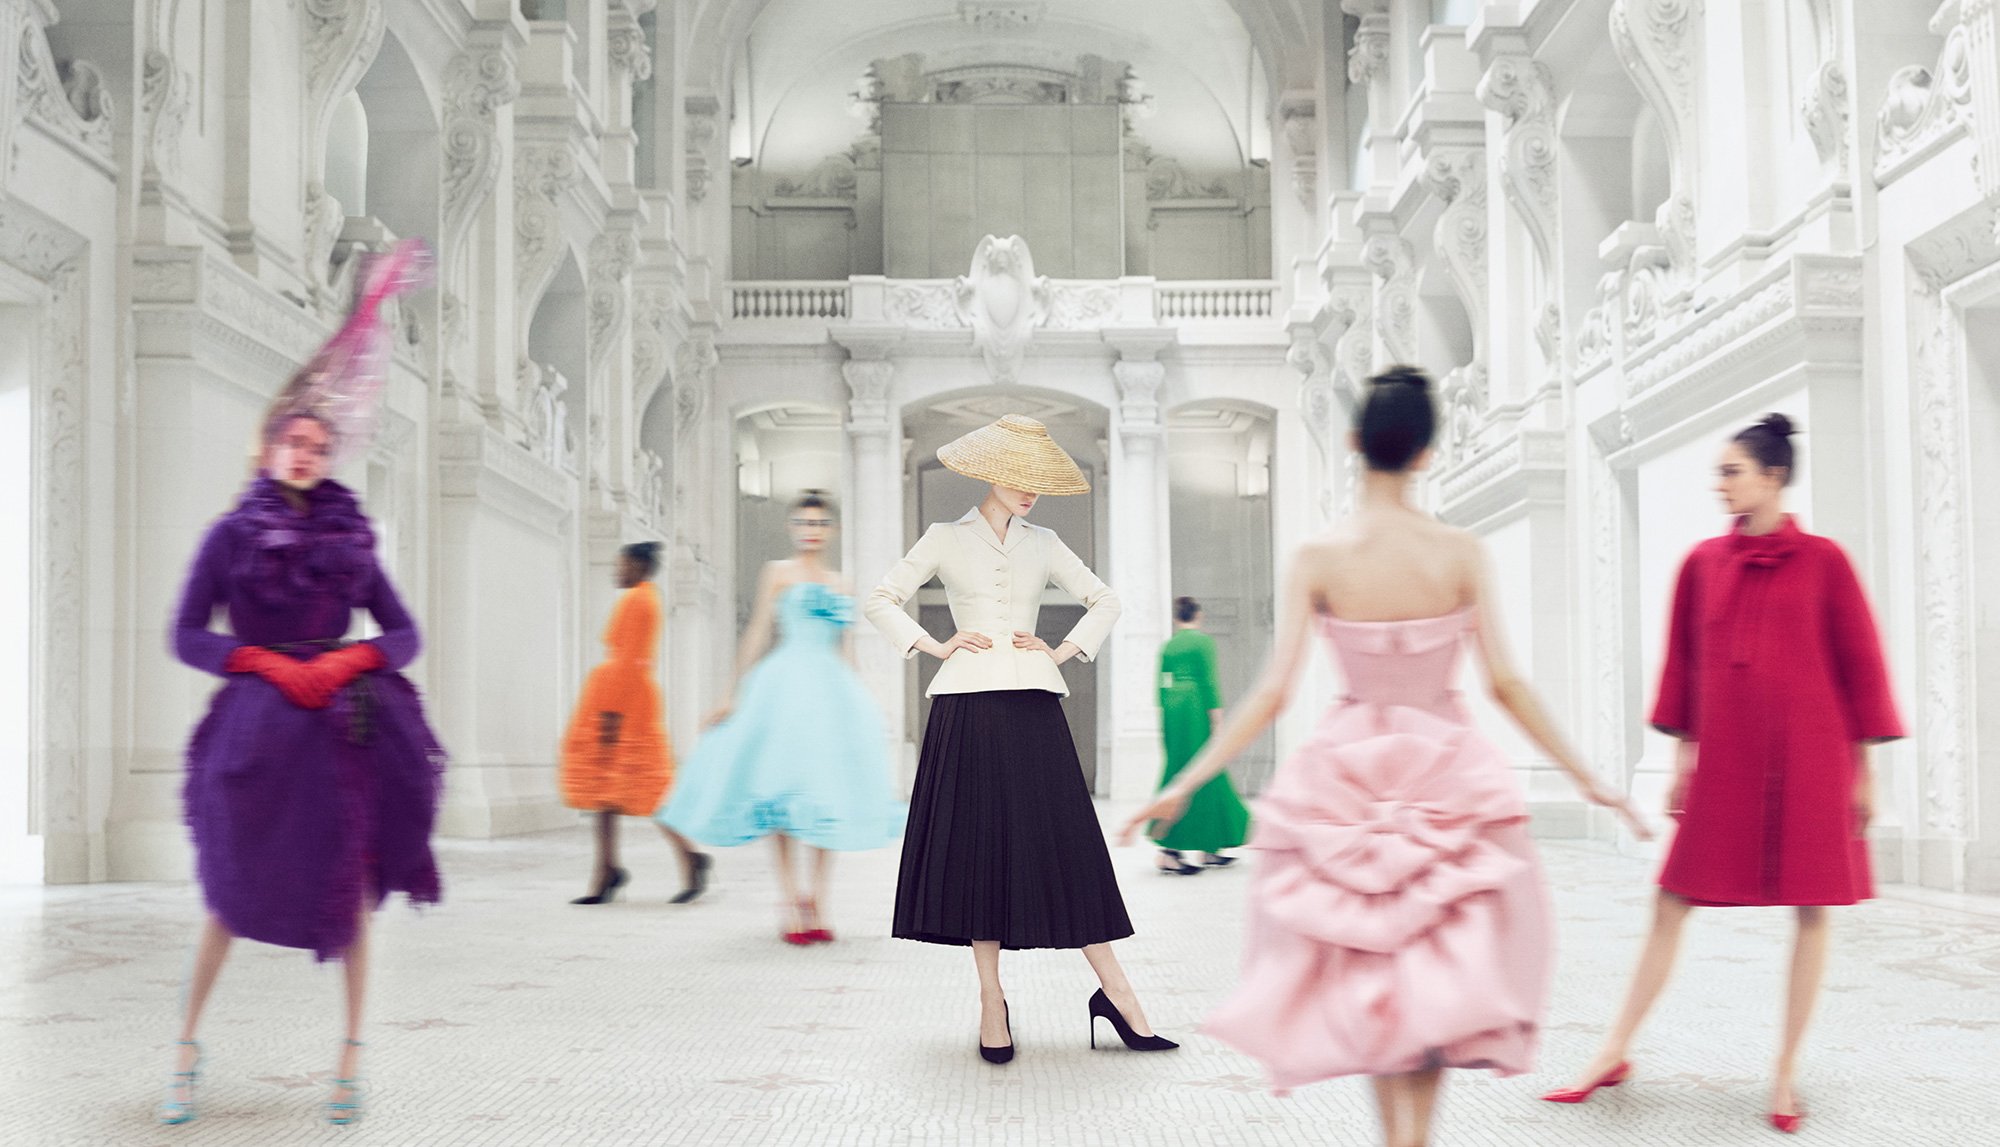 Exposição “Christian Dior, costureiro dos sonhos” no museu de Artes De